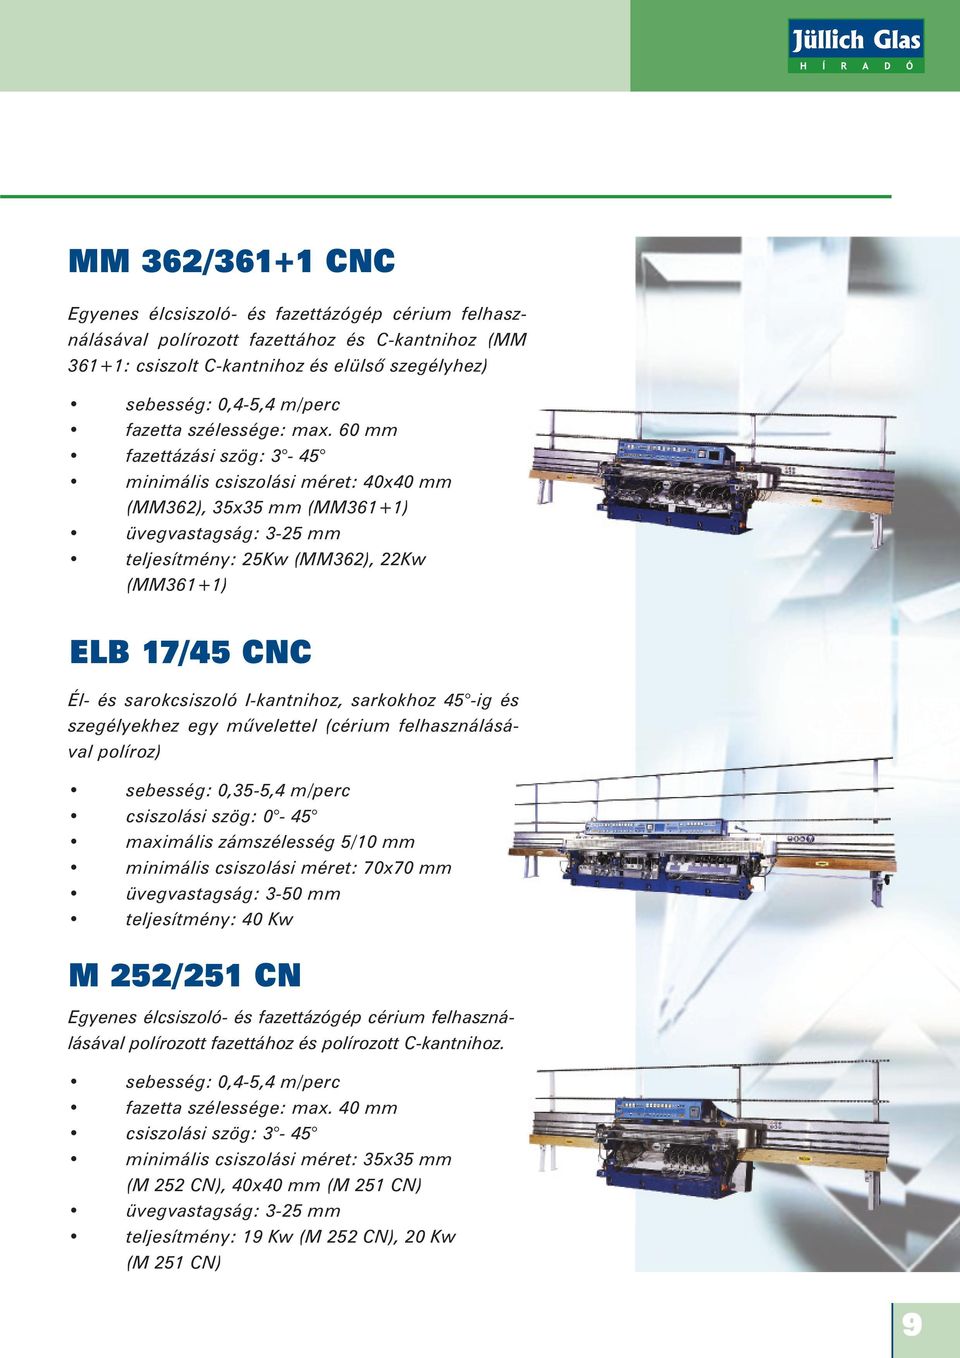 60 mm fazettázási szög: 3-45 minimális csiszolási méret: 40x40 mm (MM362), 35x35 mm (MM361+1) üvegvastagság: 3-25 mm teljesítmény: 25Kw (MM362), 22Kw (MM361+1) ELB 17/45 CNC Él- és sarokcsiszoló